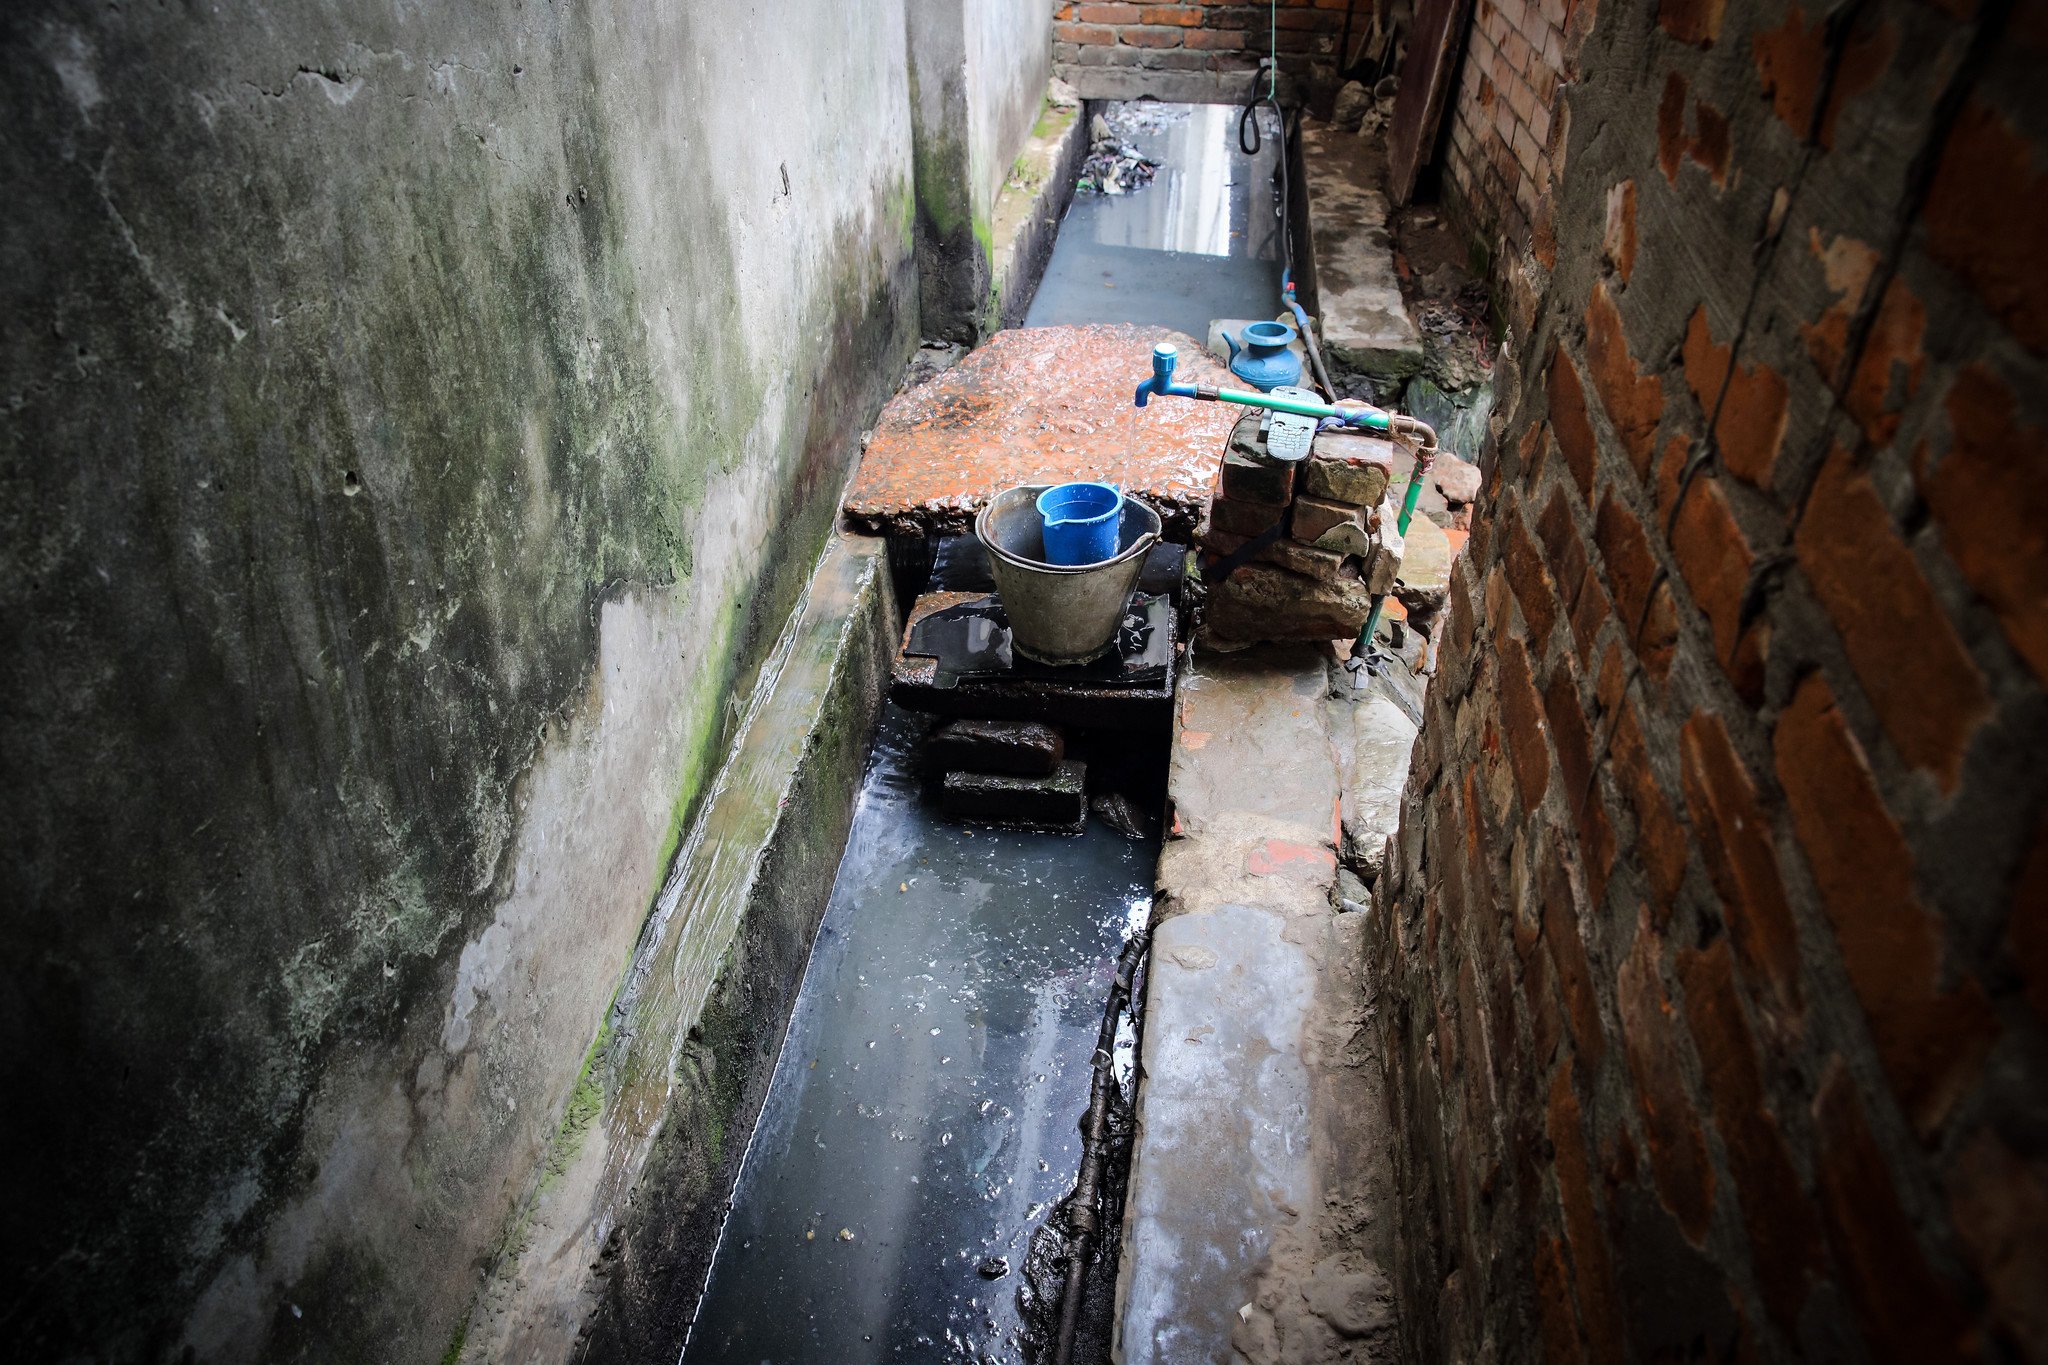 工業區的棚屋大部分都沒有安裝水管，公用取水處經常大排長龍，居民會在水渠旁邊洗澡、洗衣服和預備食物，衛生情況惡劣。另外，城內排污設備未臻完善，雨季時，污水渠淤塞的情況時有發生，溢出的污水會連同雜物湧入棚屋，惡劣的衛生環境危害居民健康。（攝影：GMB Akash）